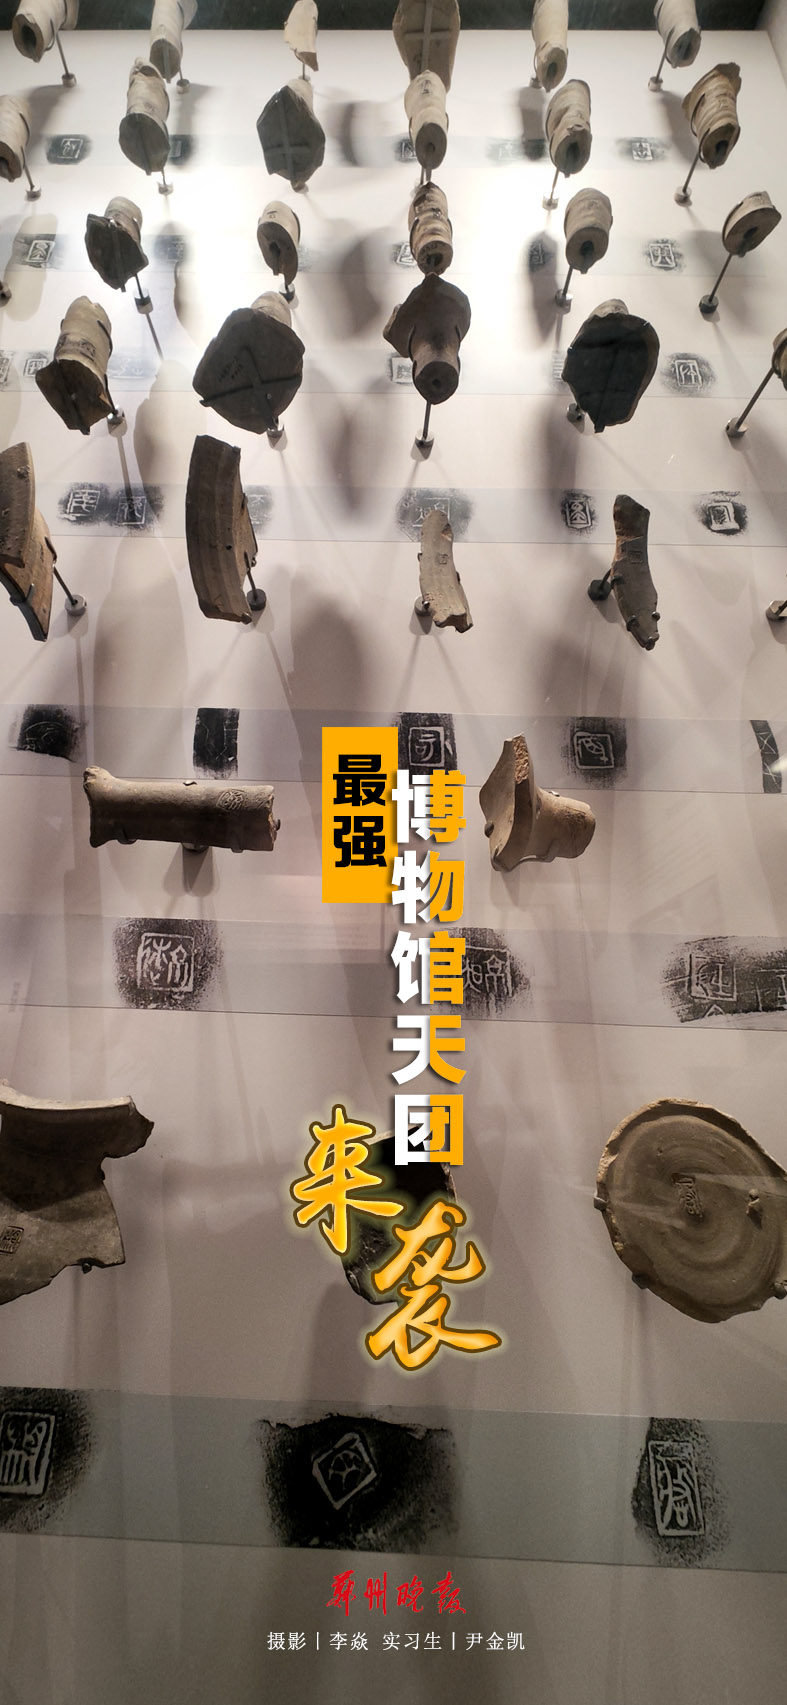 郑州博物馆藏品介绍图片